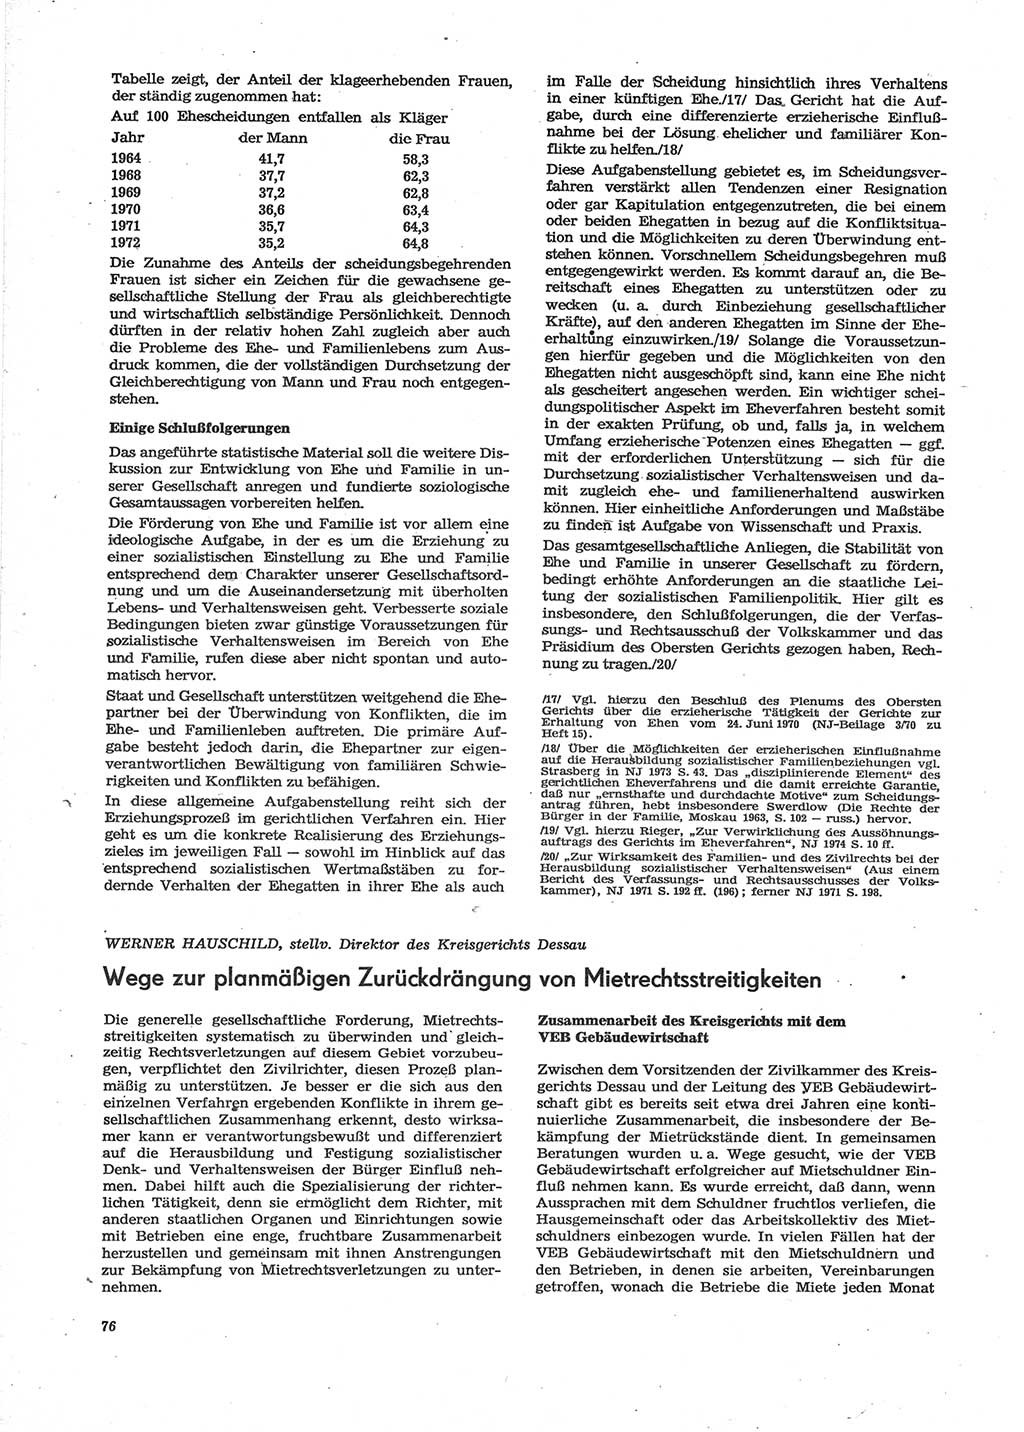 Neue Justiz (NJ), Zeitschrift für Recht und Rechtswissenschaft [Deutsche Demokratische Republik (DDR)], 28. Jahrgang 1974, Seite 76 (NJ DDR 1974, S. 76)